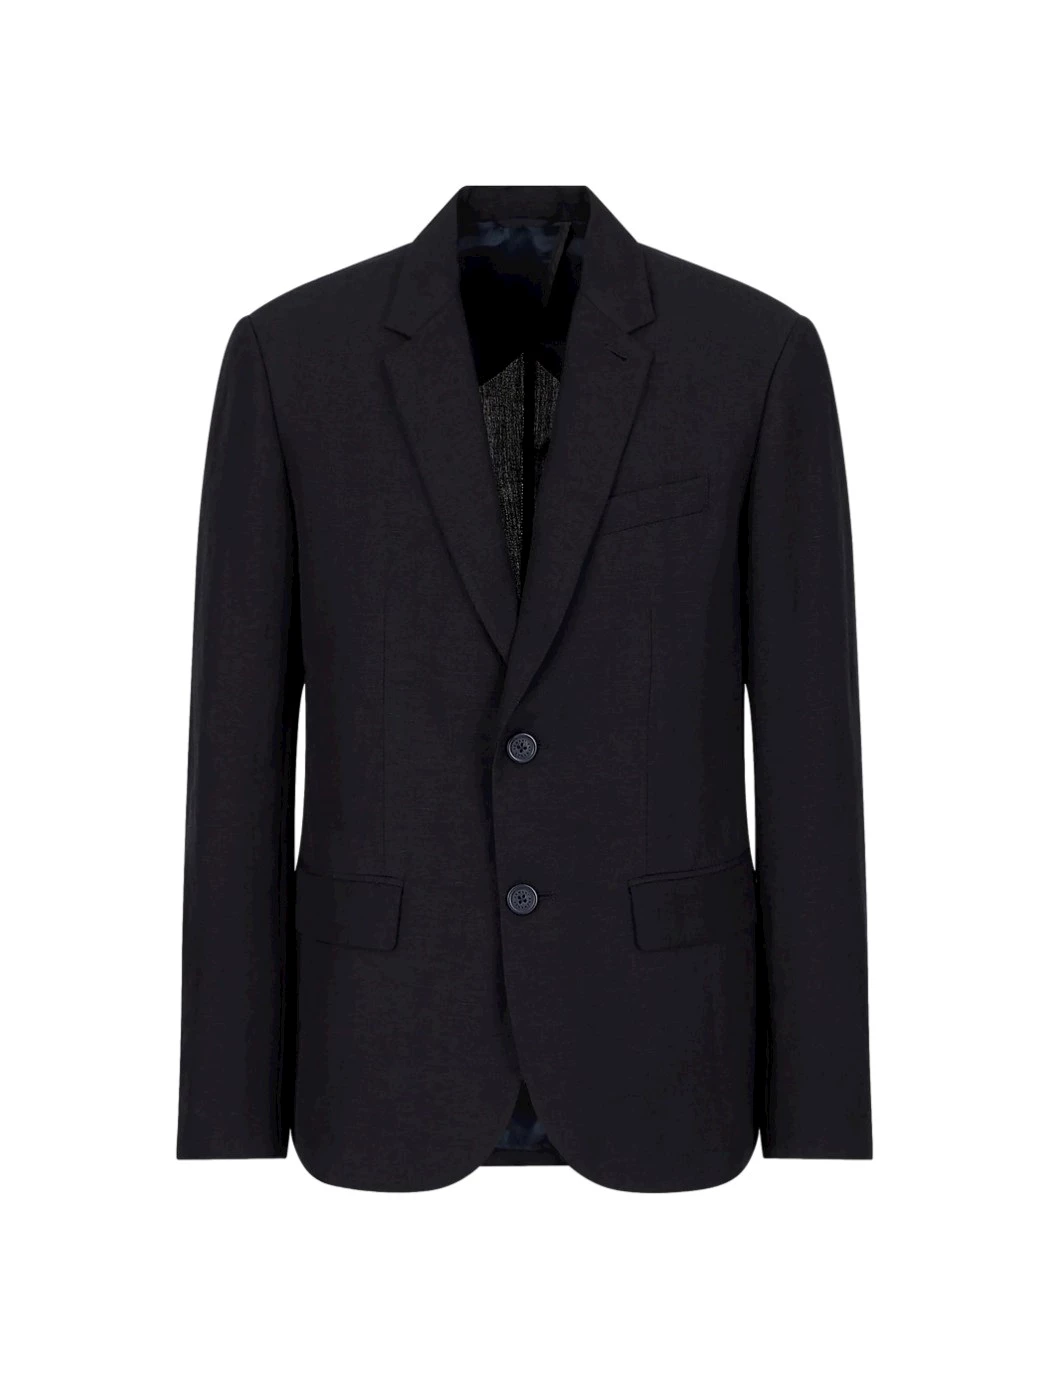 Armani Exchange Casual Jacket